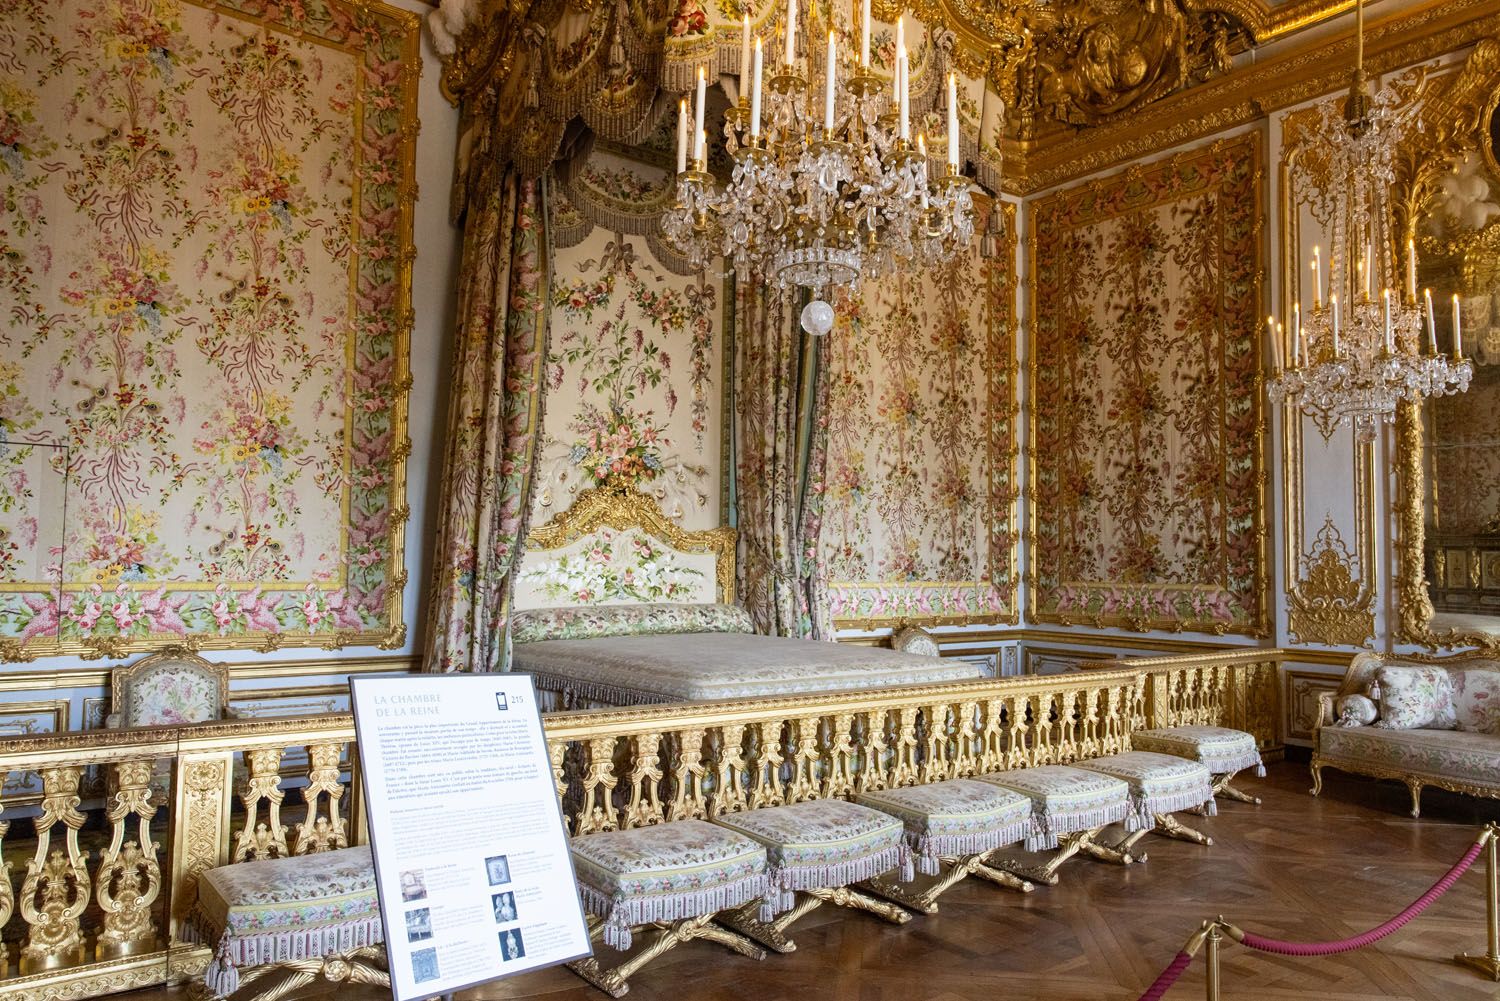 Queens Bedchamber | How to Visit Versailles